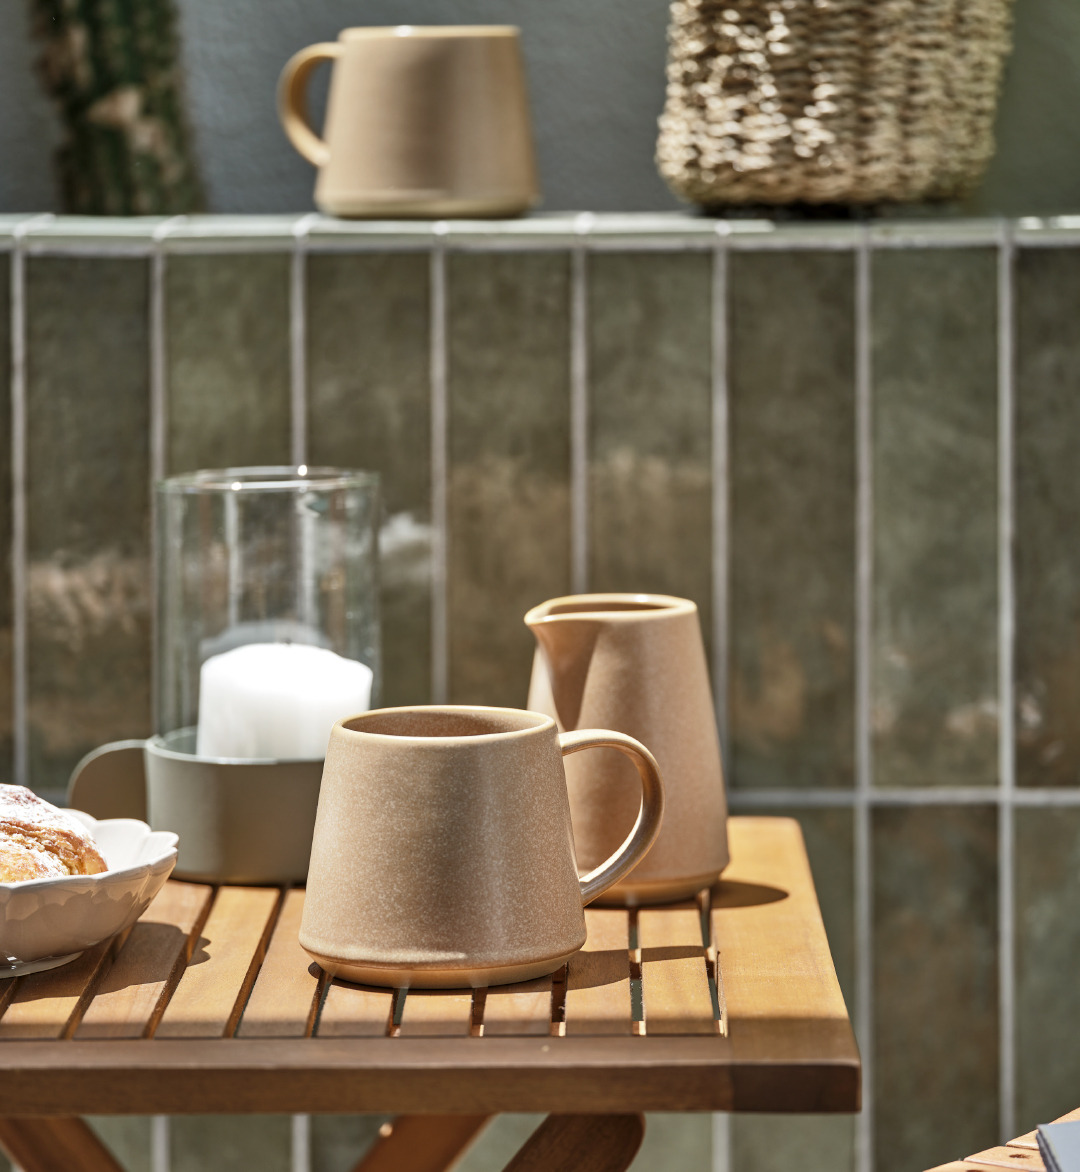 Lattiera e tazza in color marrone e stile rustico e lanterna in vetro ed acciaio su tavolo ben allestito